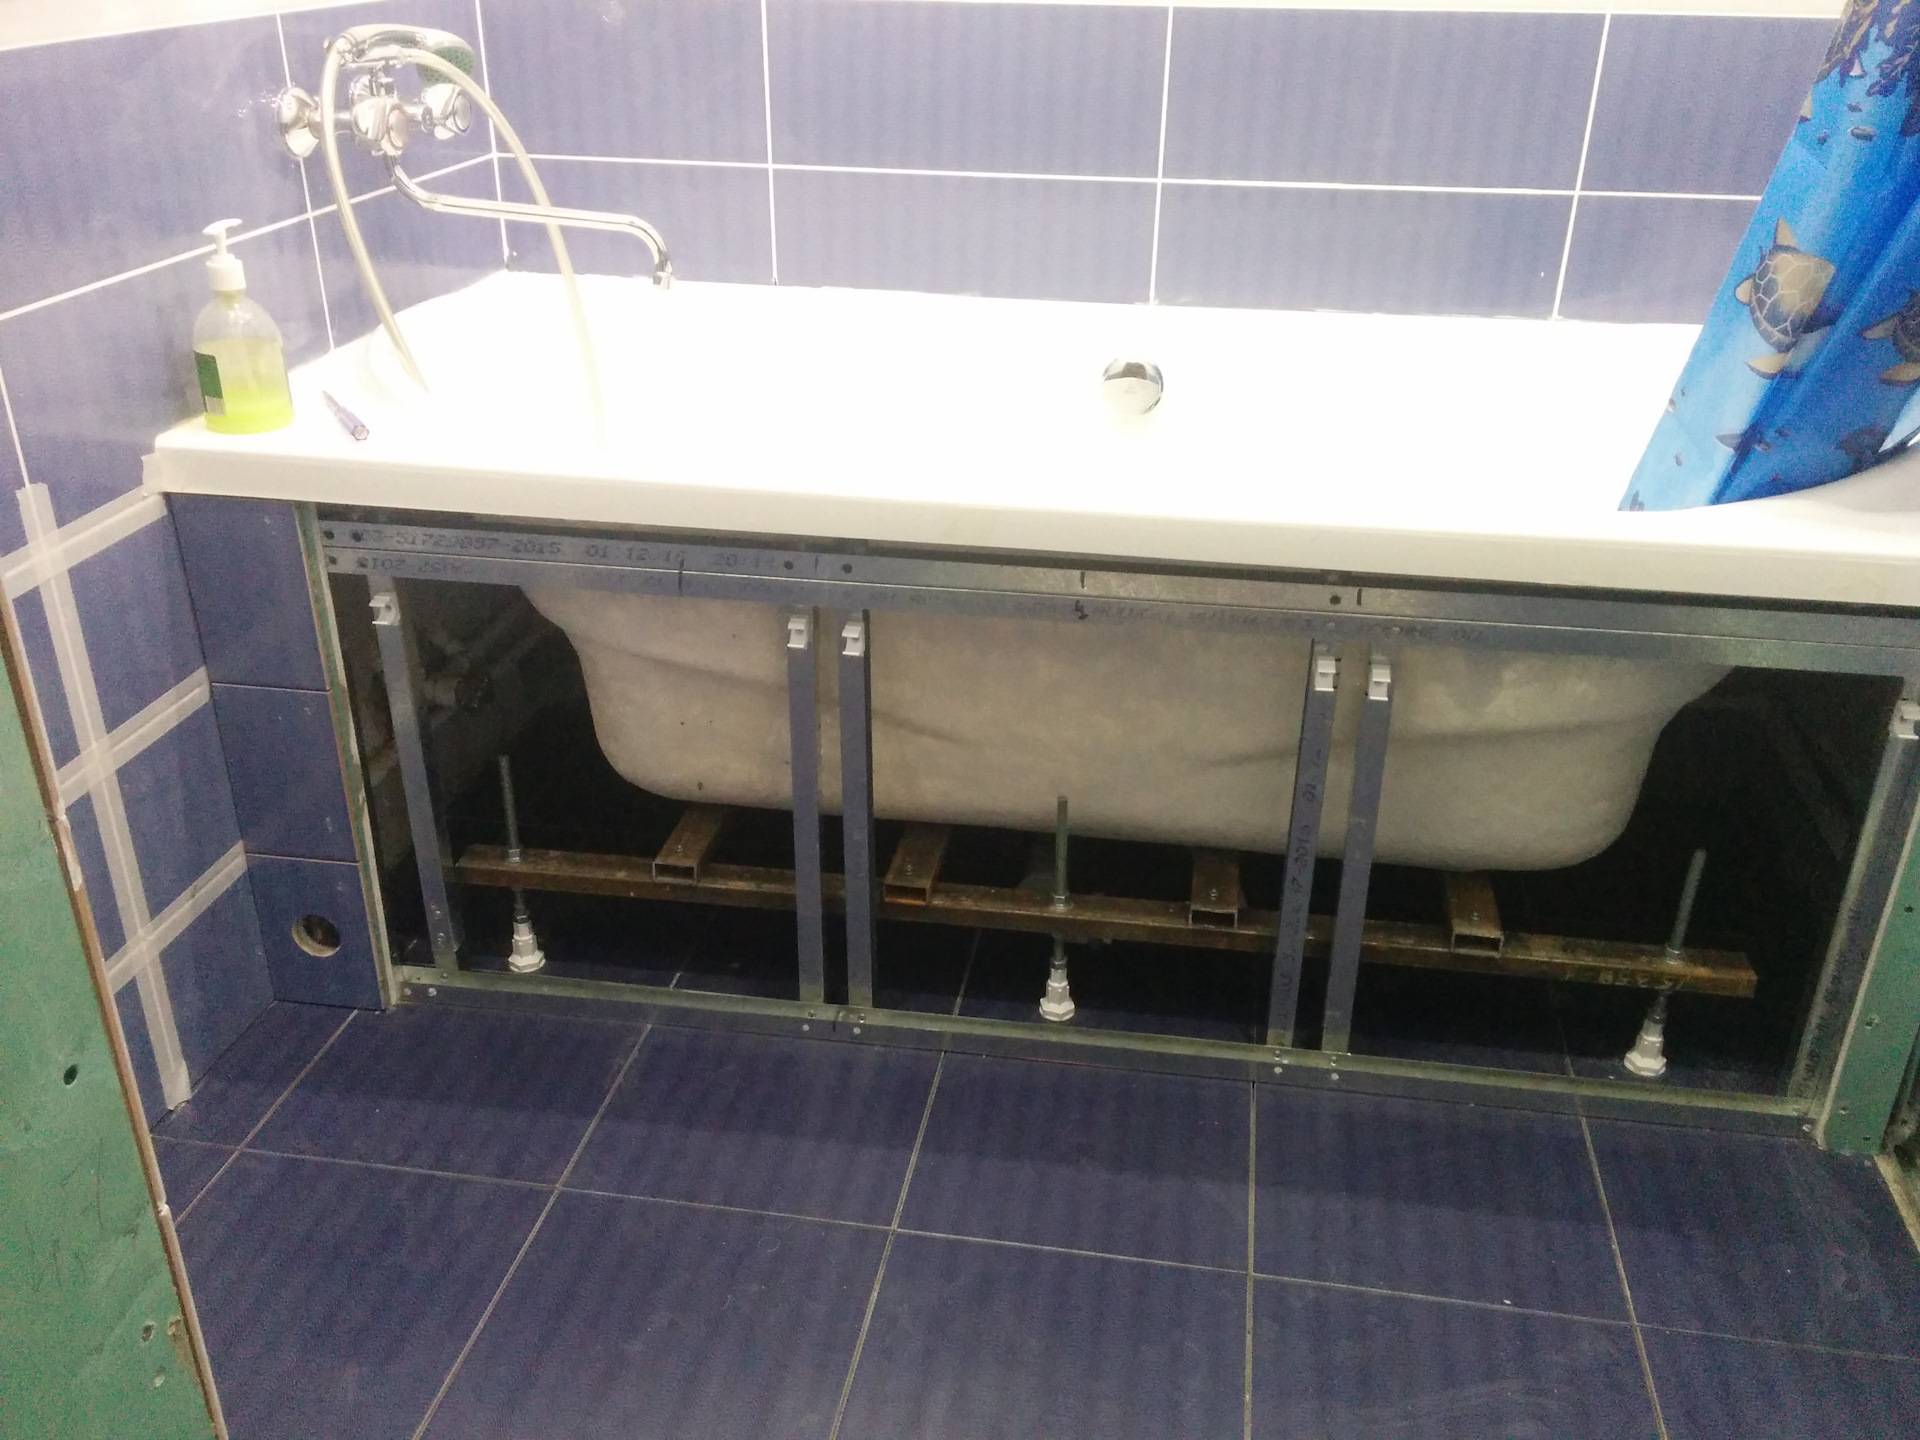 Экраны в ванную: основные разновидности и их особенности, фото конструкции в ванной комнате